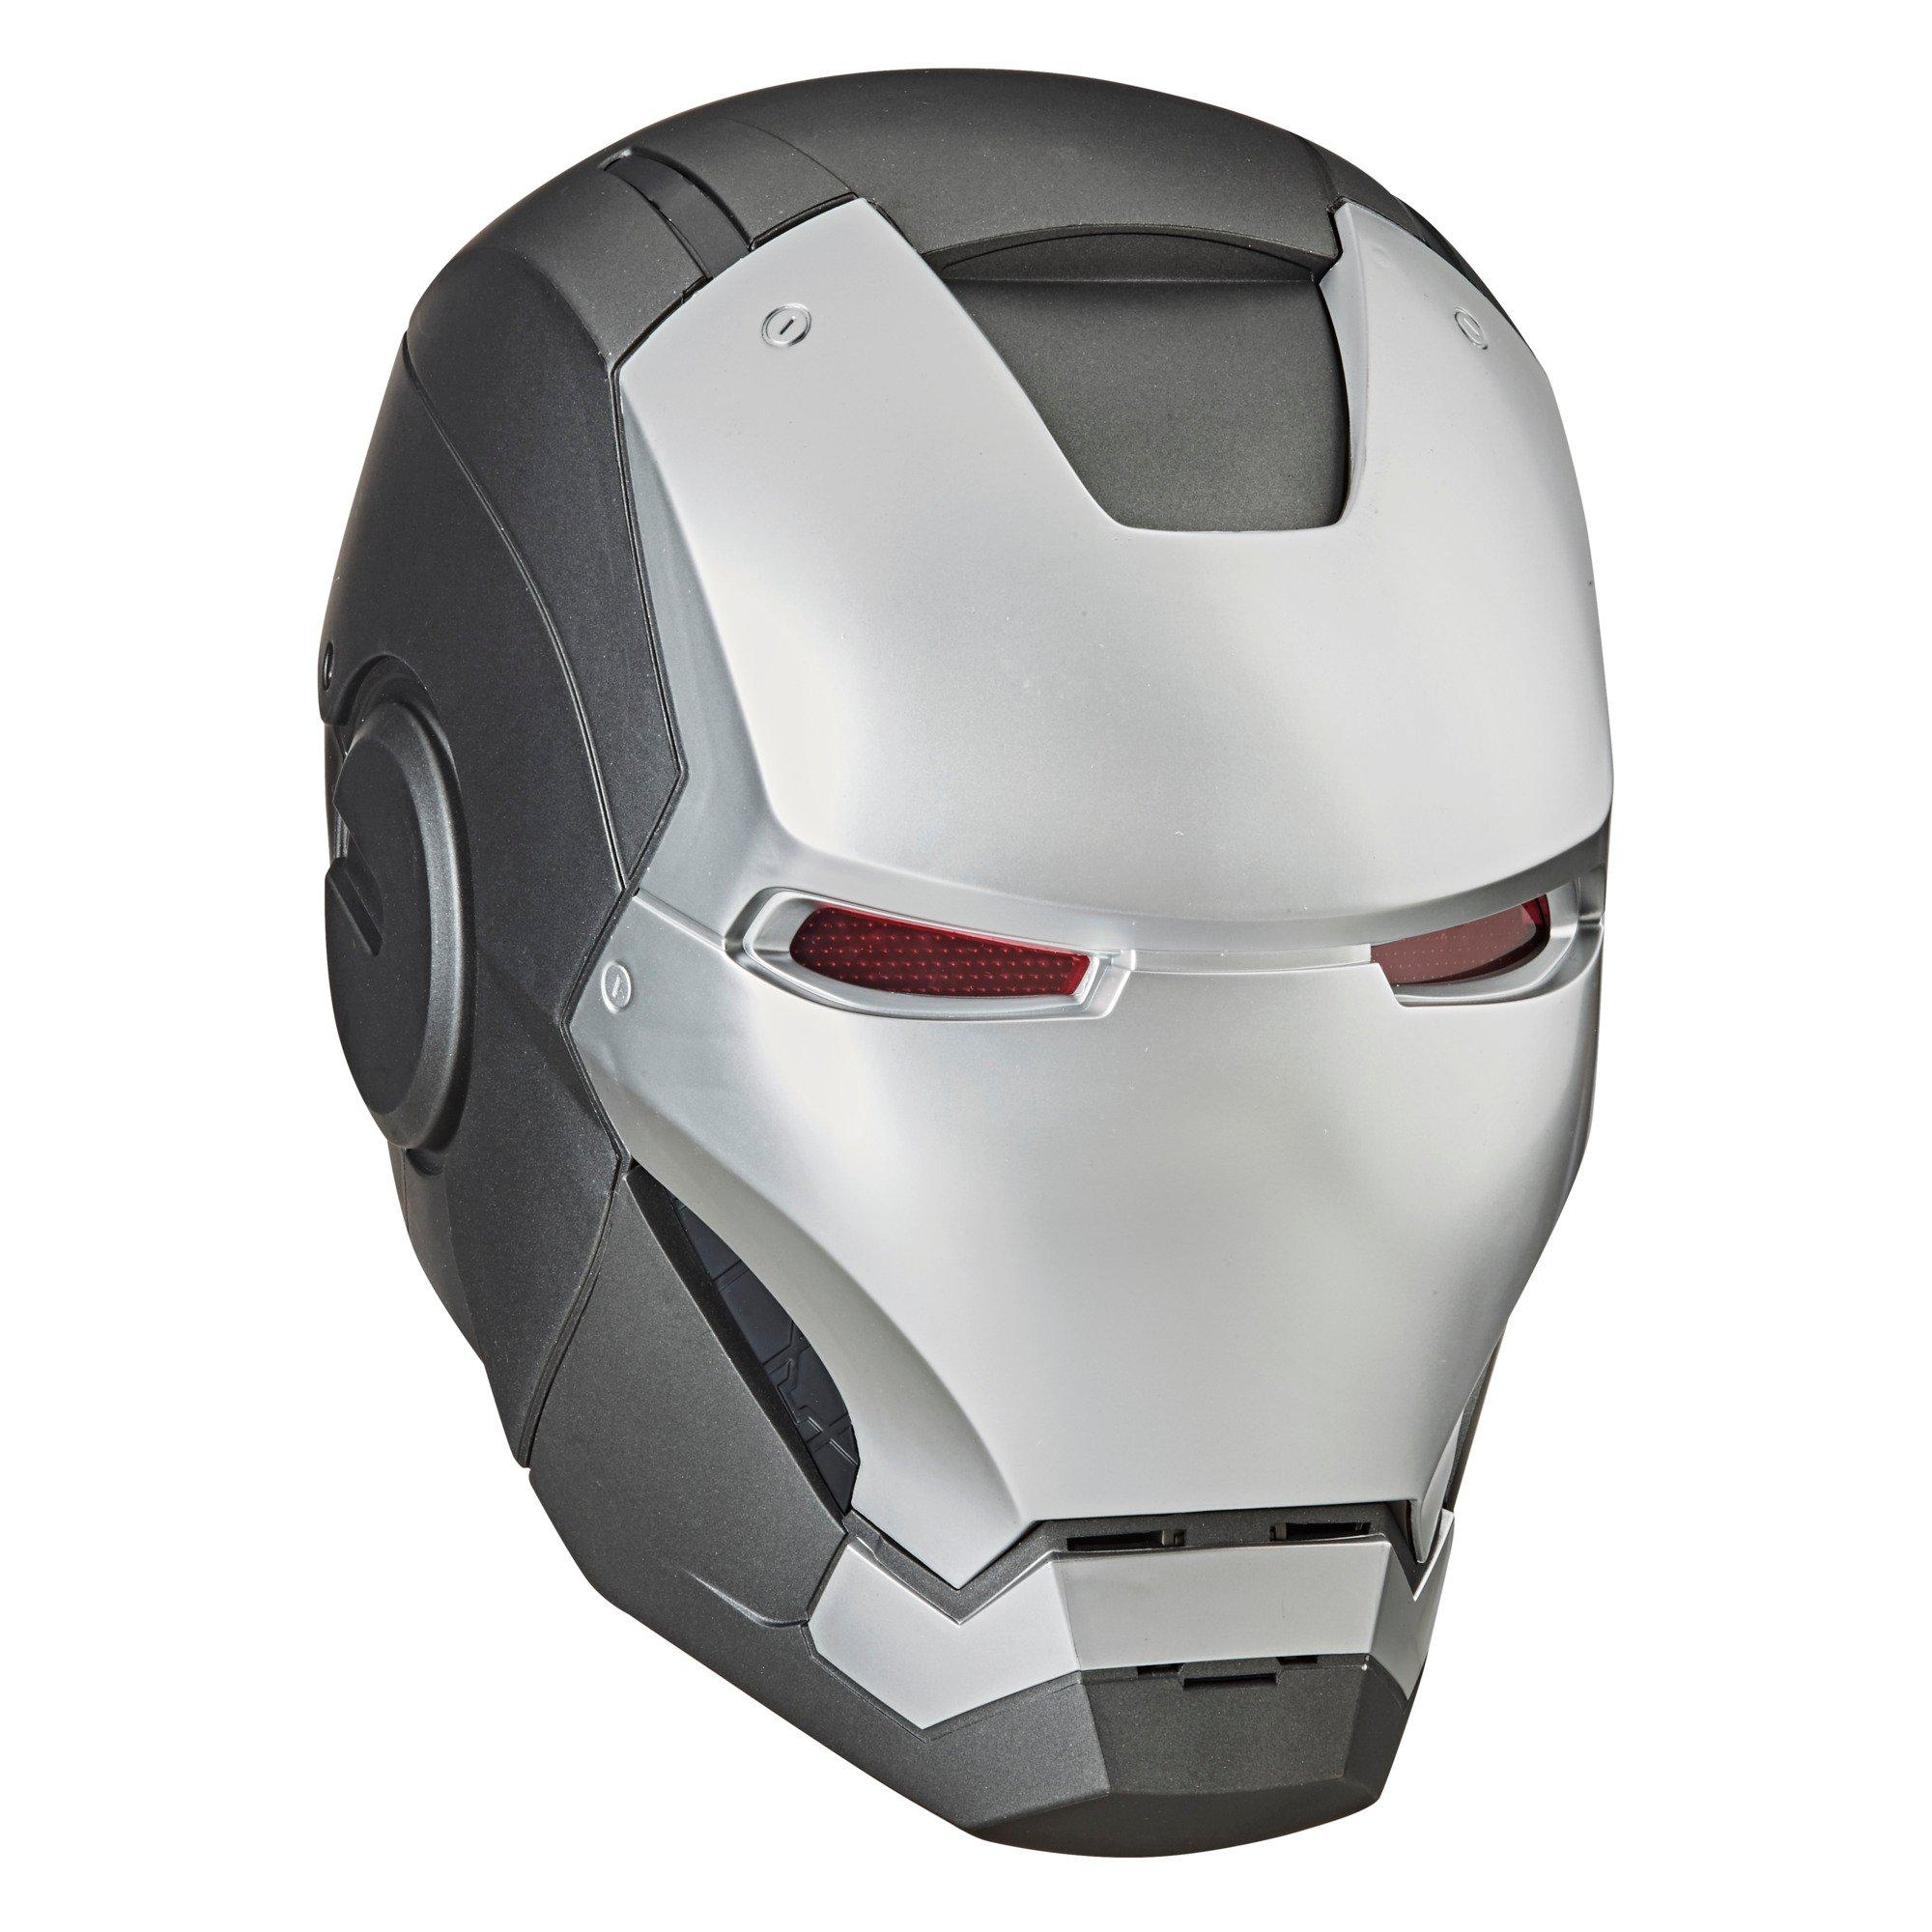 Hasbro Marvel Legends Series War Machine Electronic Helmet   GameStop